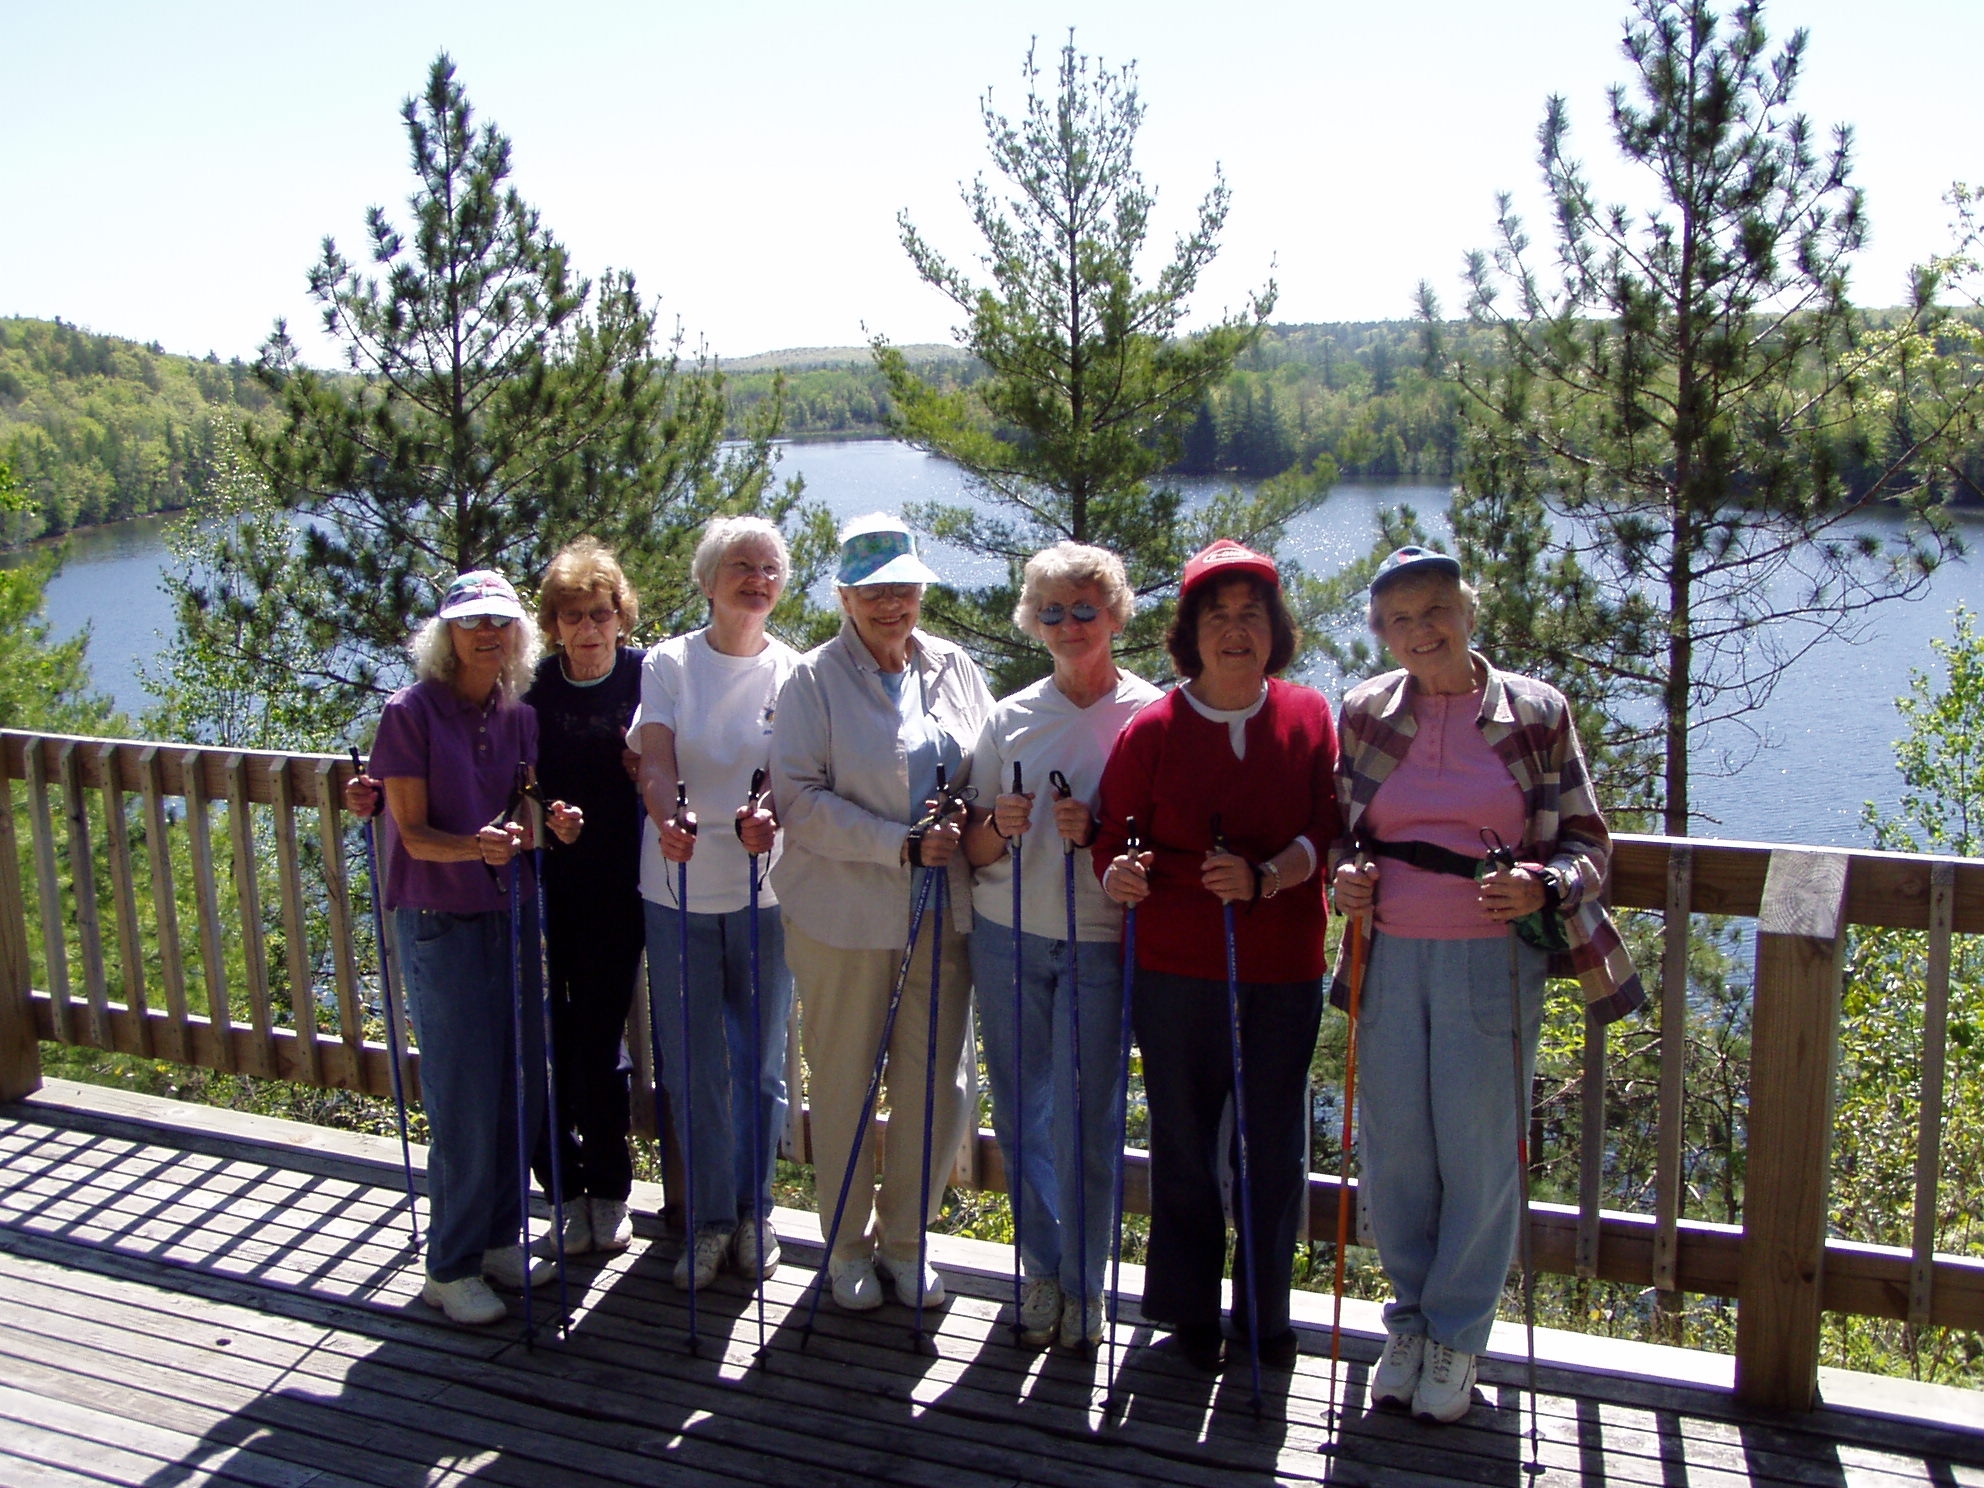 Nordic Walking Group - Traverse City Senior Center Hiking Club Image